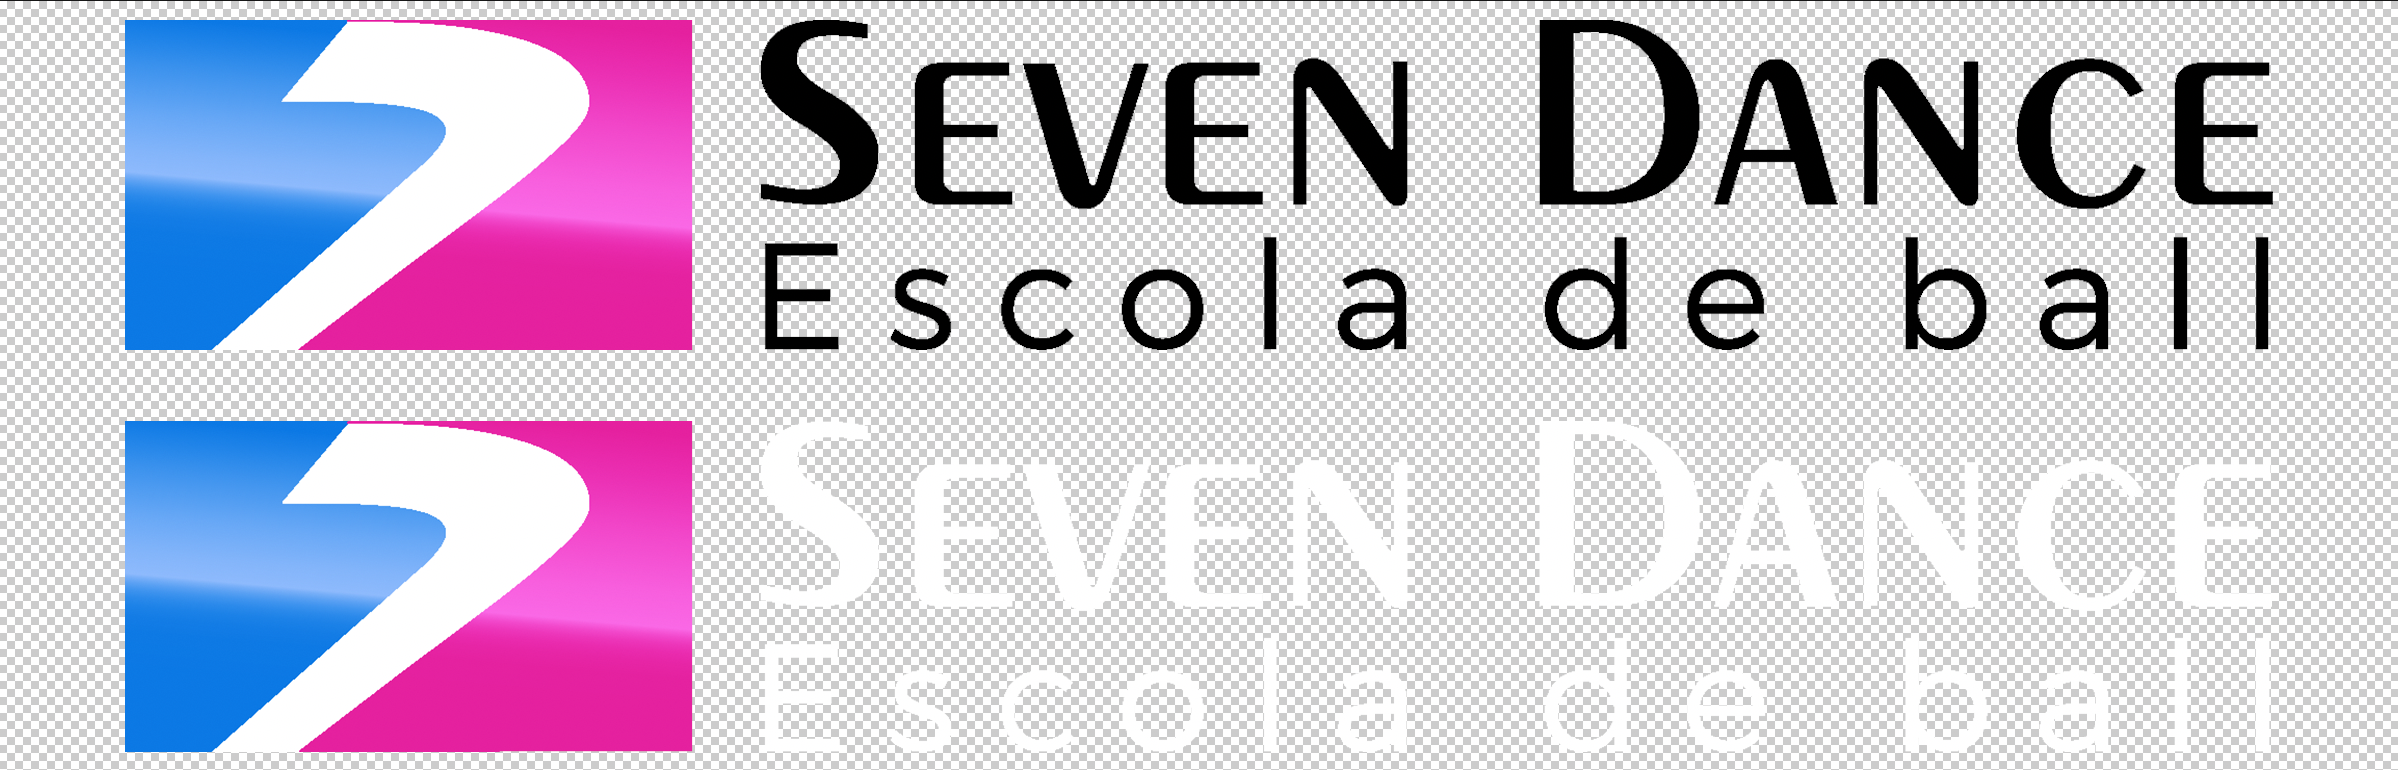 Logo horizontal Seven Dance escuela de baile